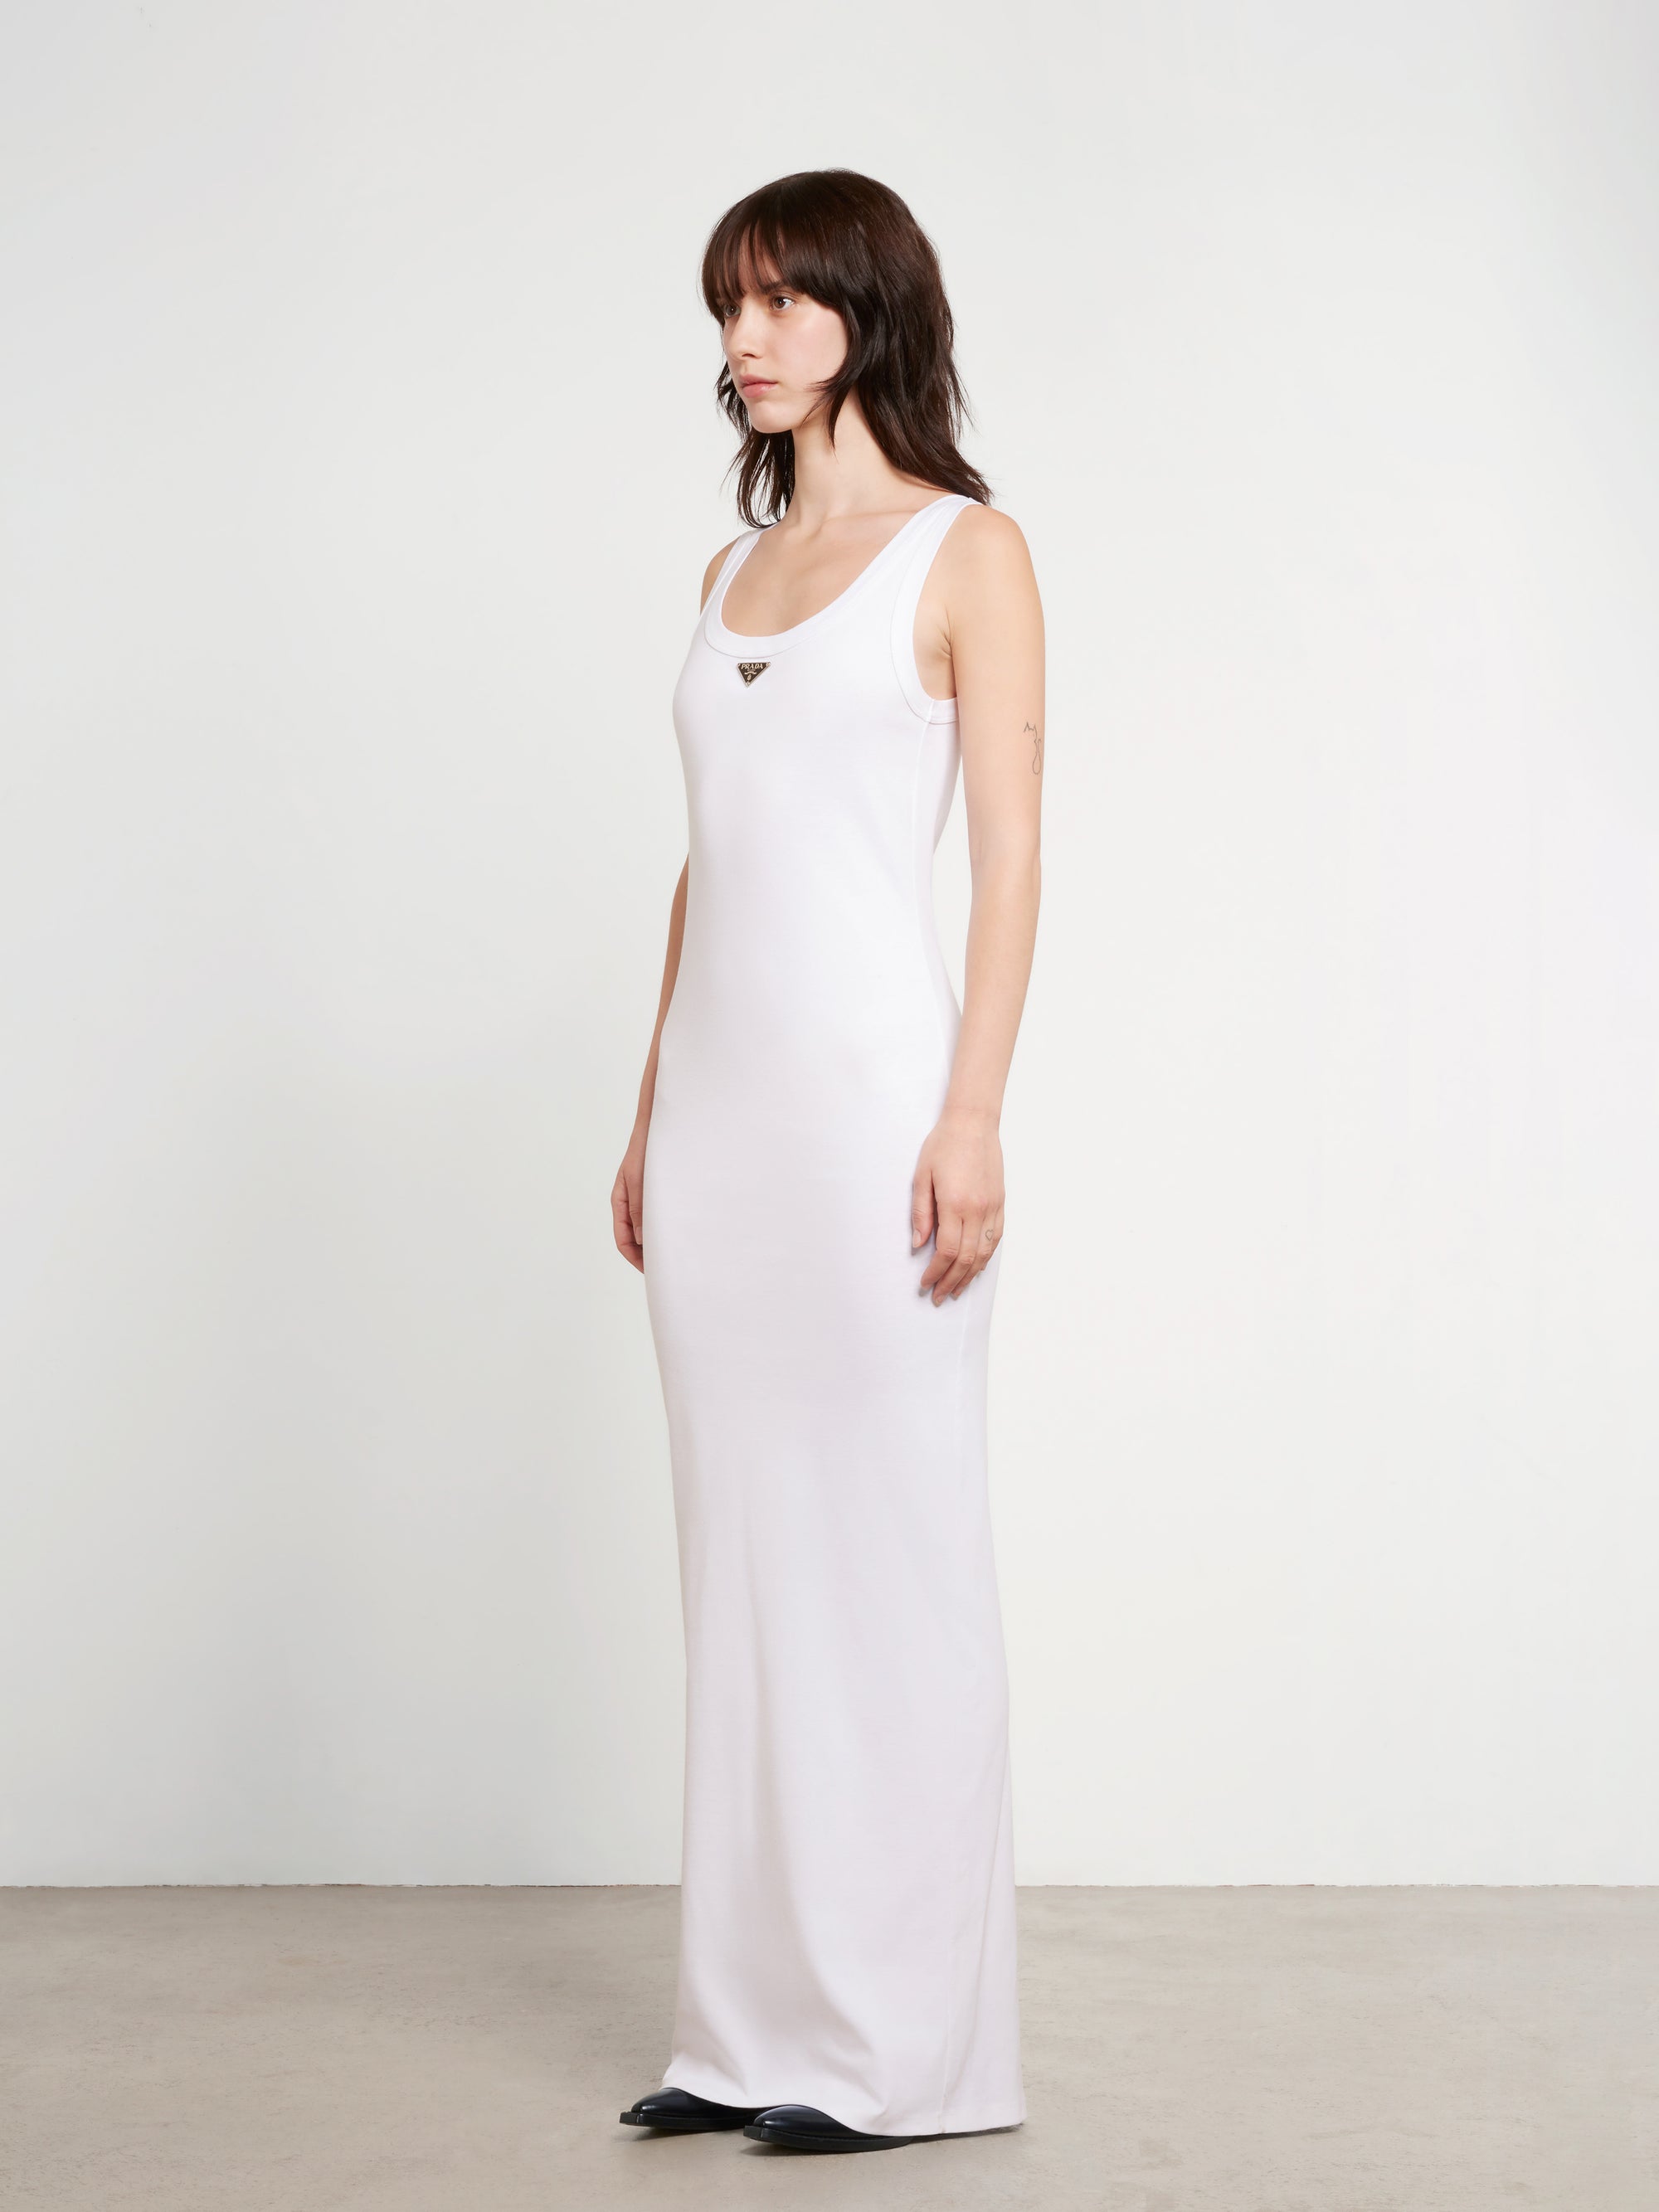 Prada - Women’s Cotton Jersey Dress - (White) view 3